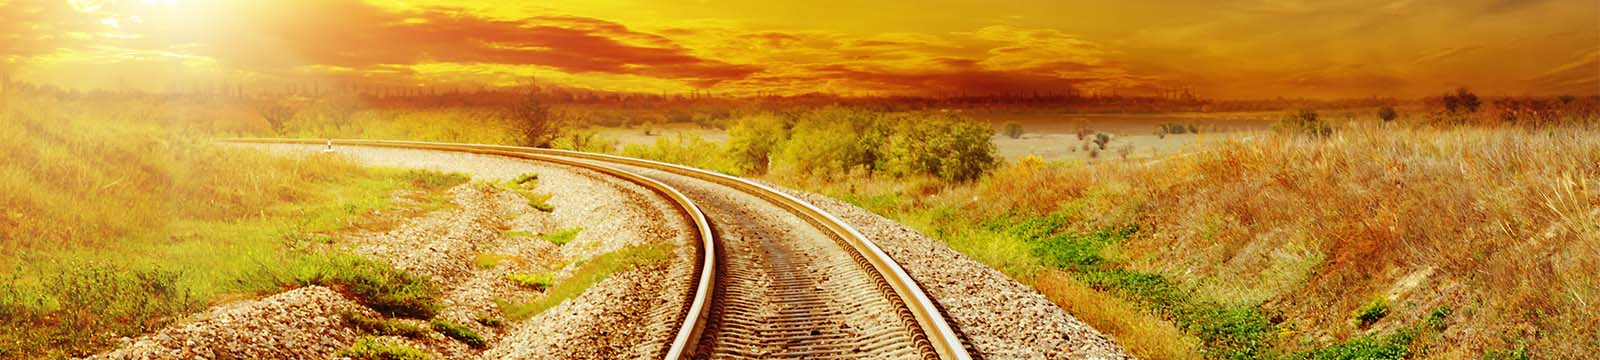 Train tracks running through the prairie curving towards a sunrise.